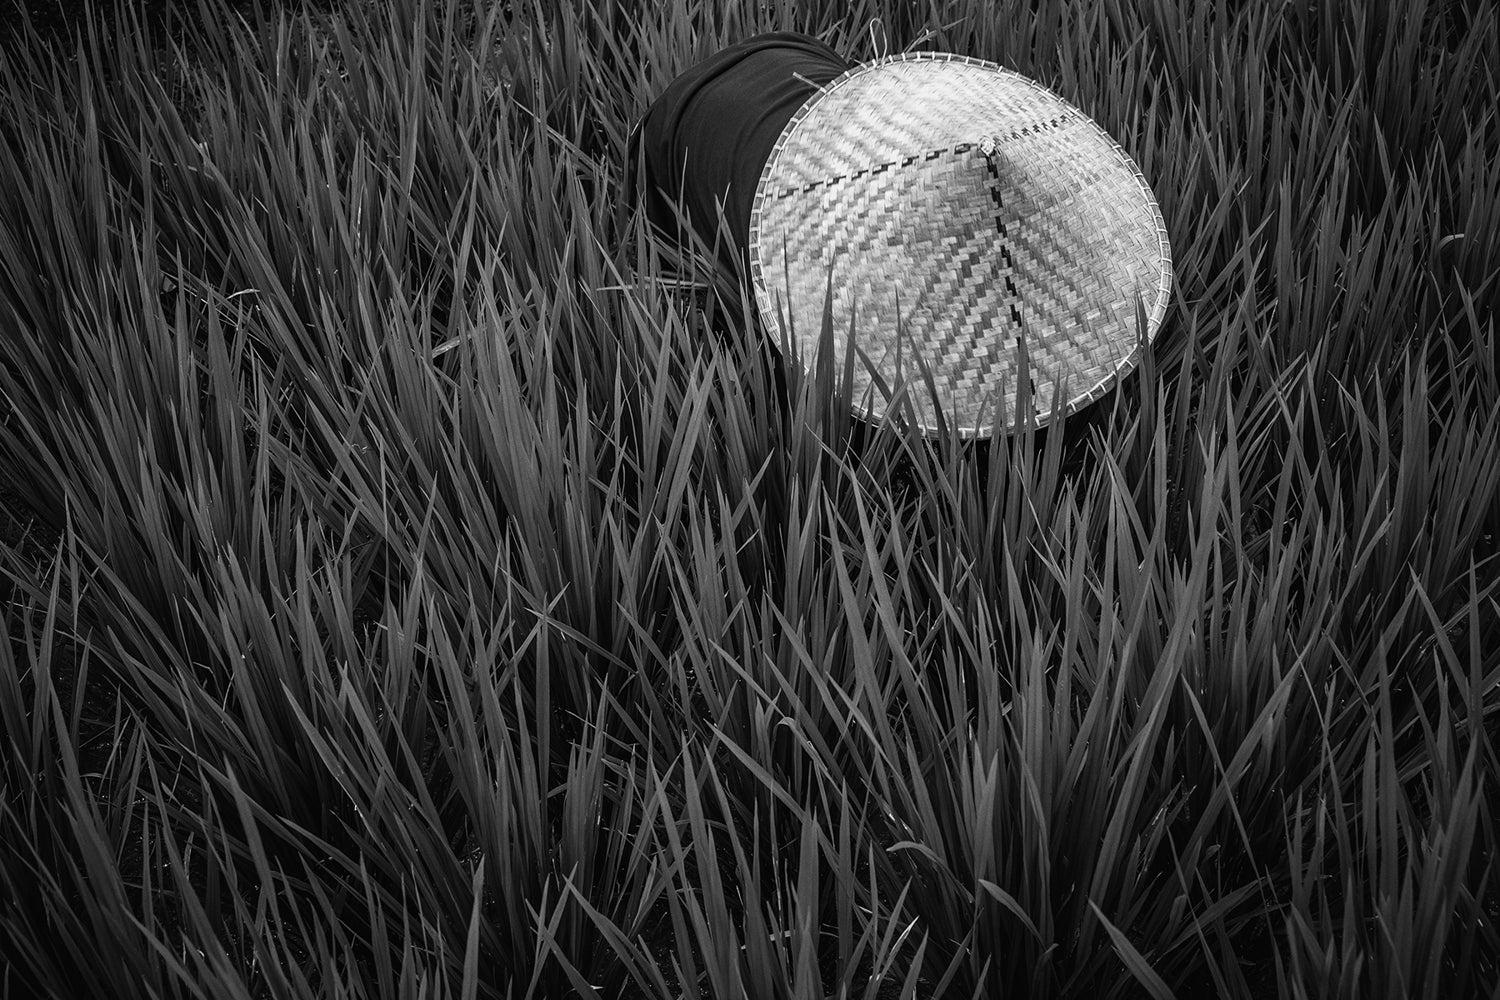 Fotomurale Rice Fields In Bw